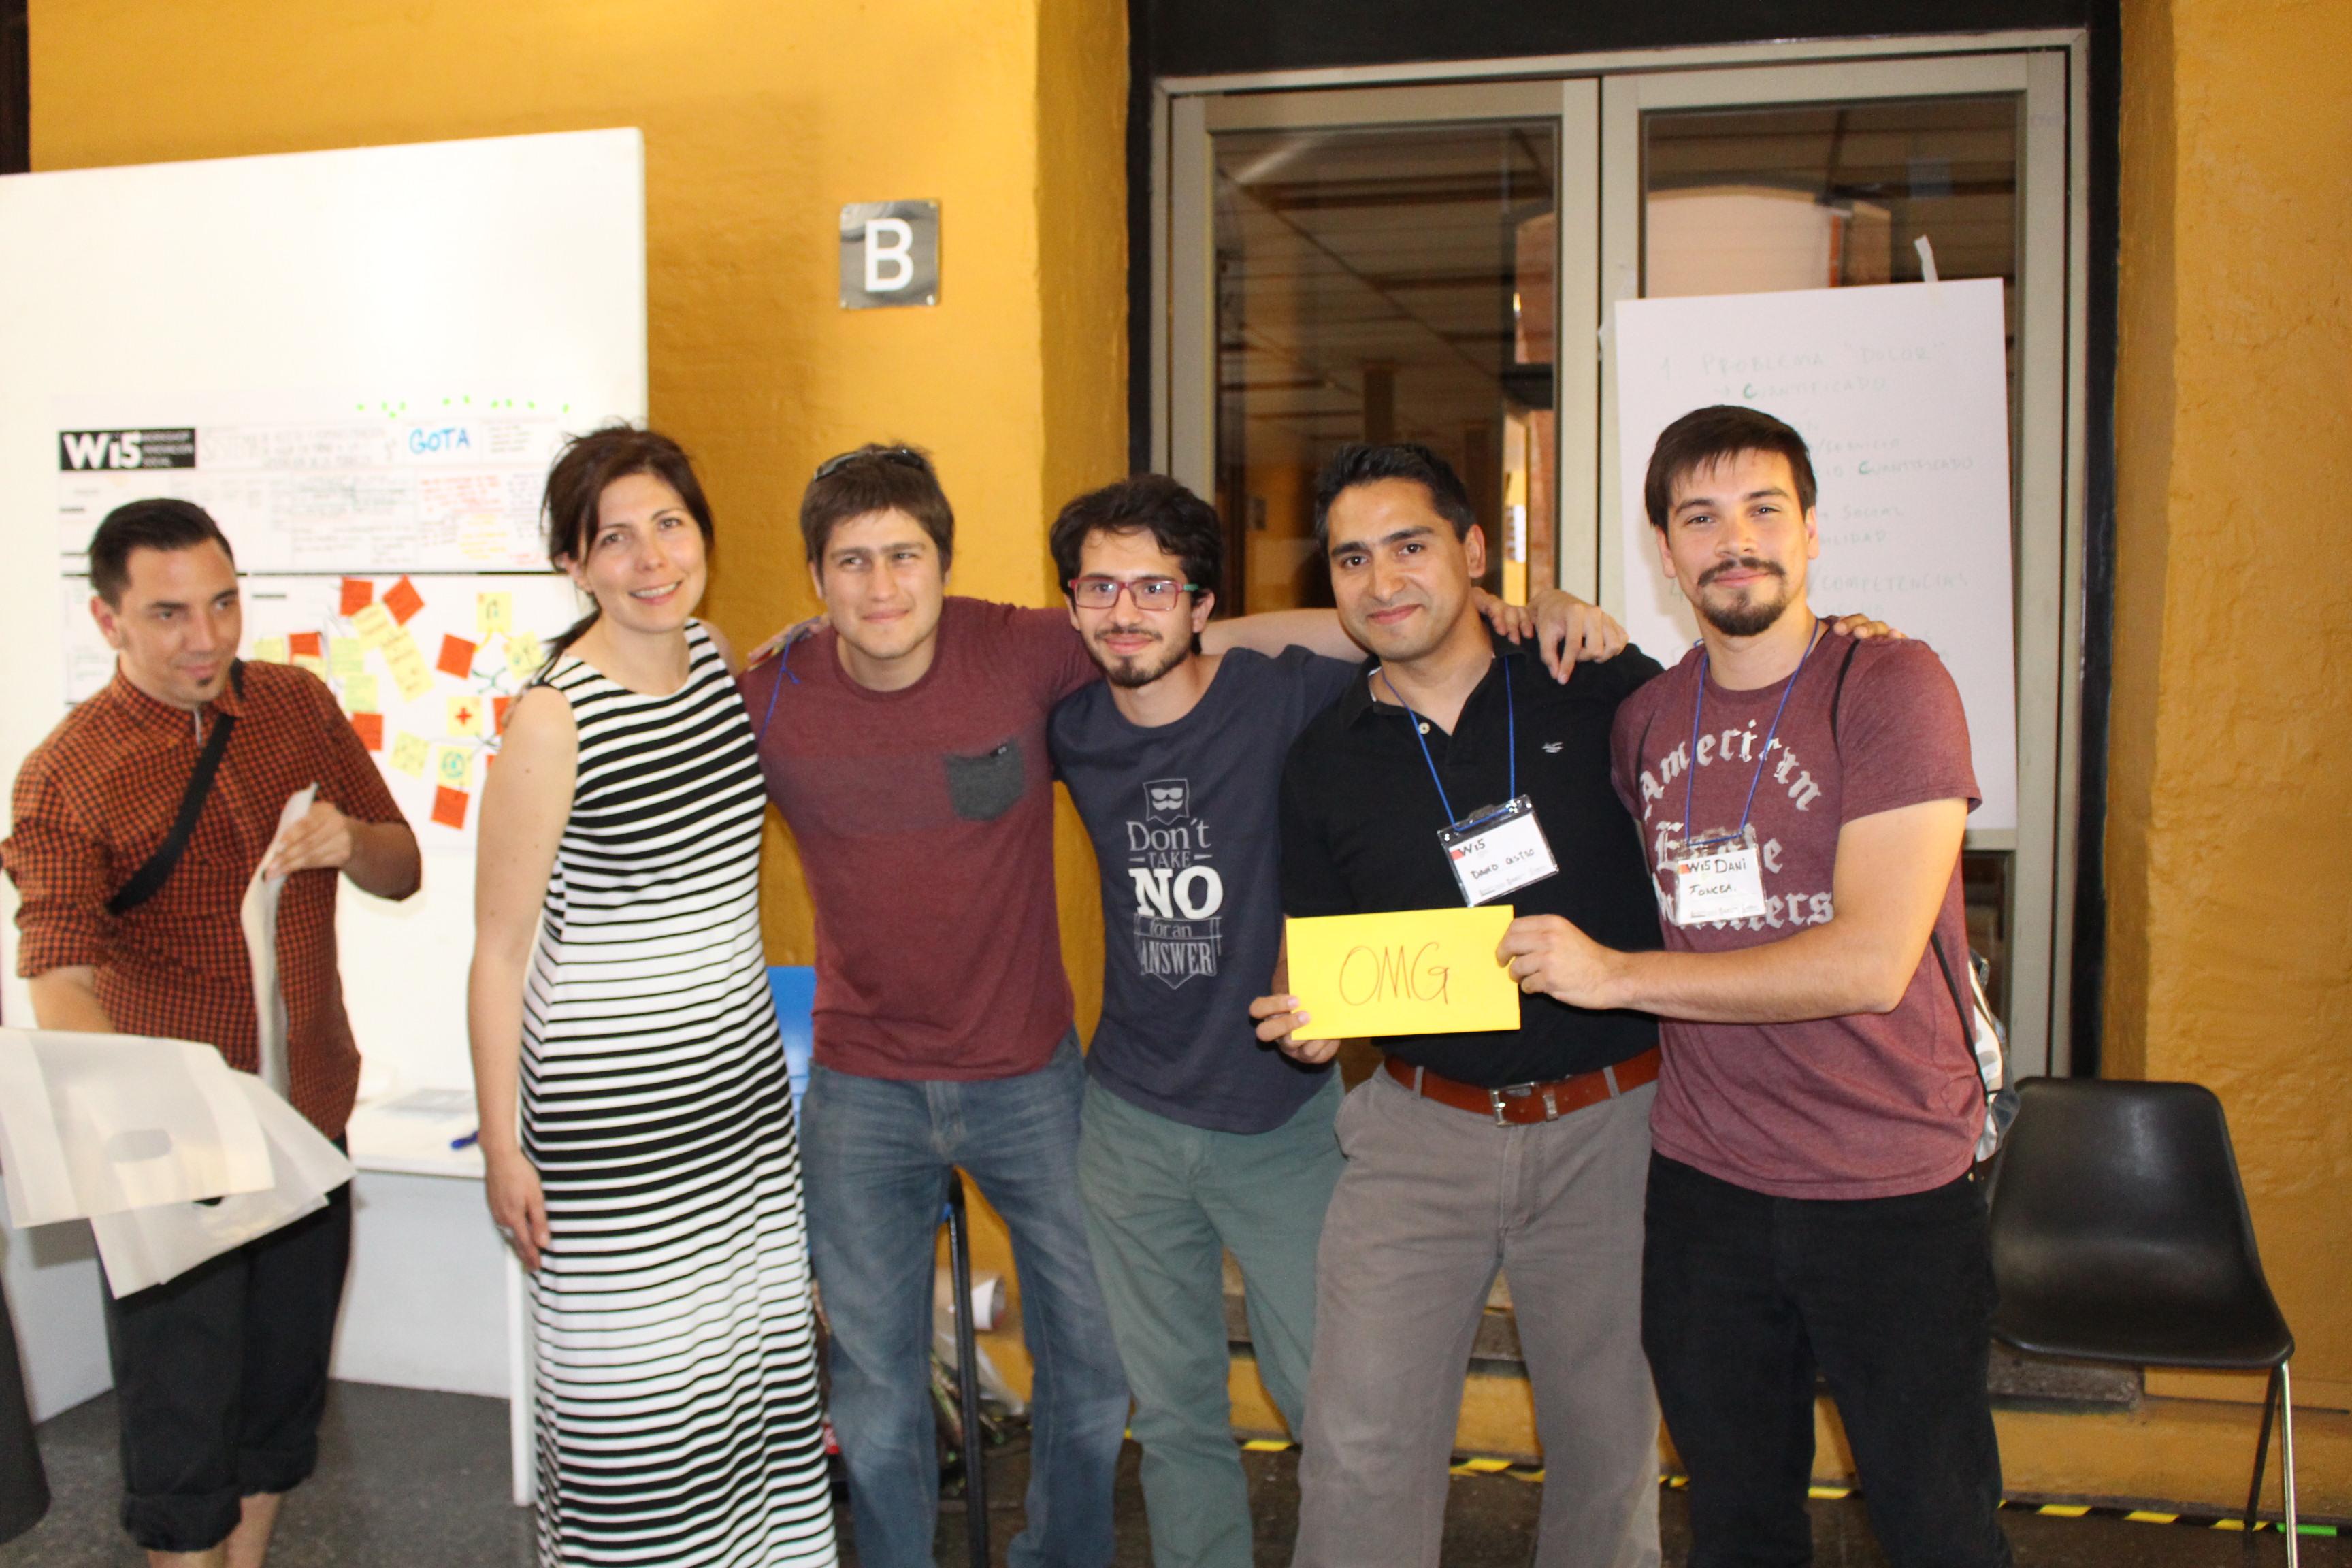 El equipo "Manada", autores del proyecto "EntraMapp", recibió el primer lugar de parte del jurado.